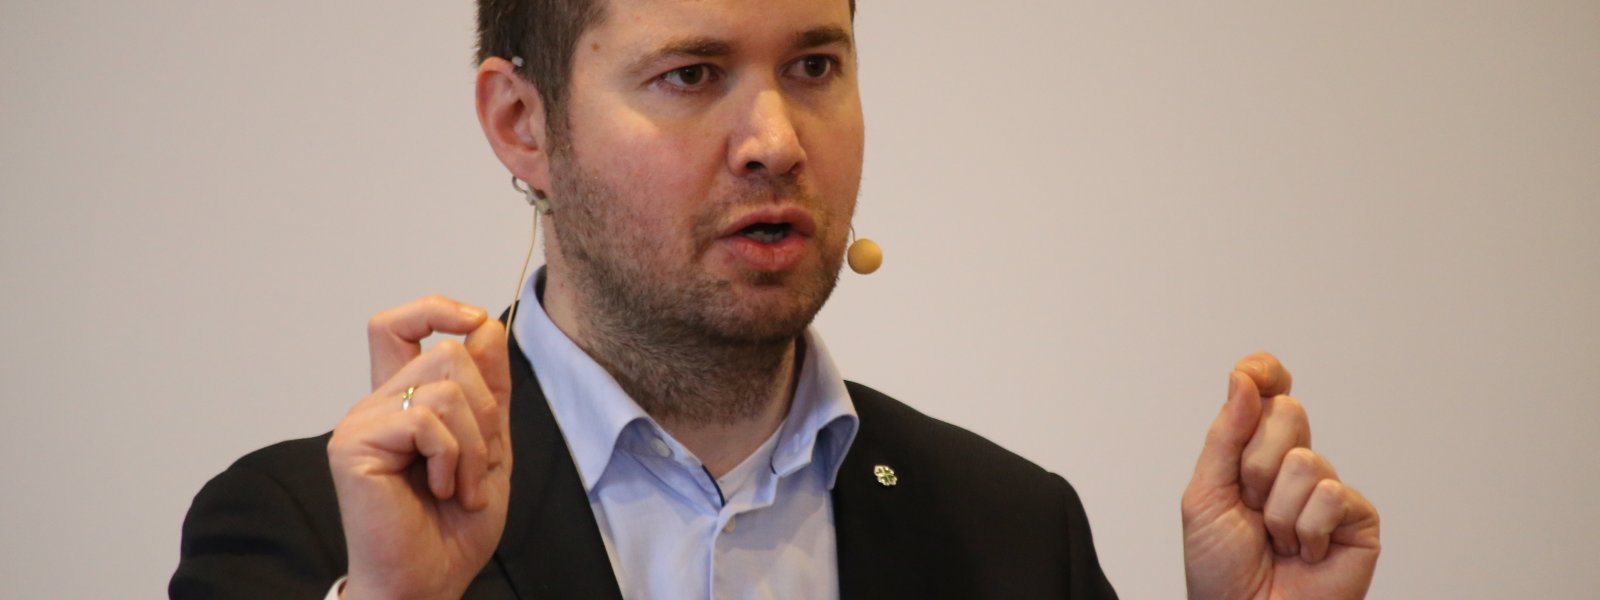 Geir Pollestad (Sp) er leder av Stortingets næringskomite